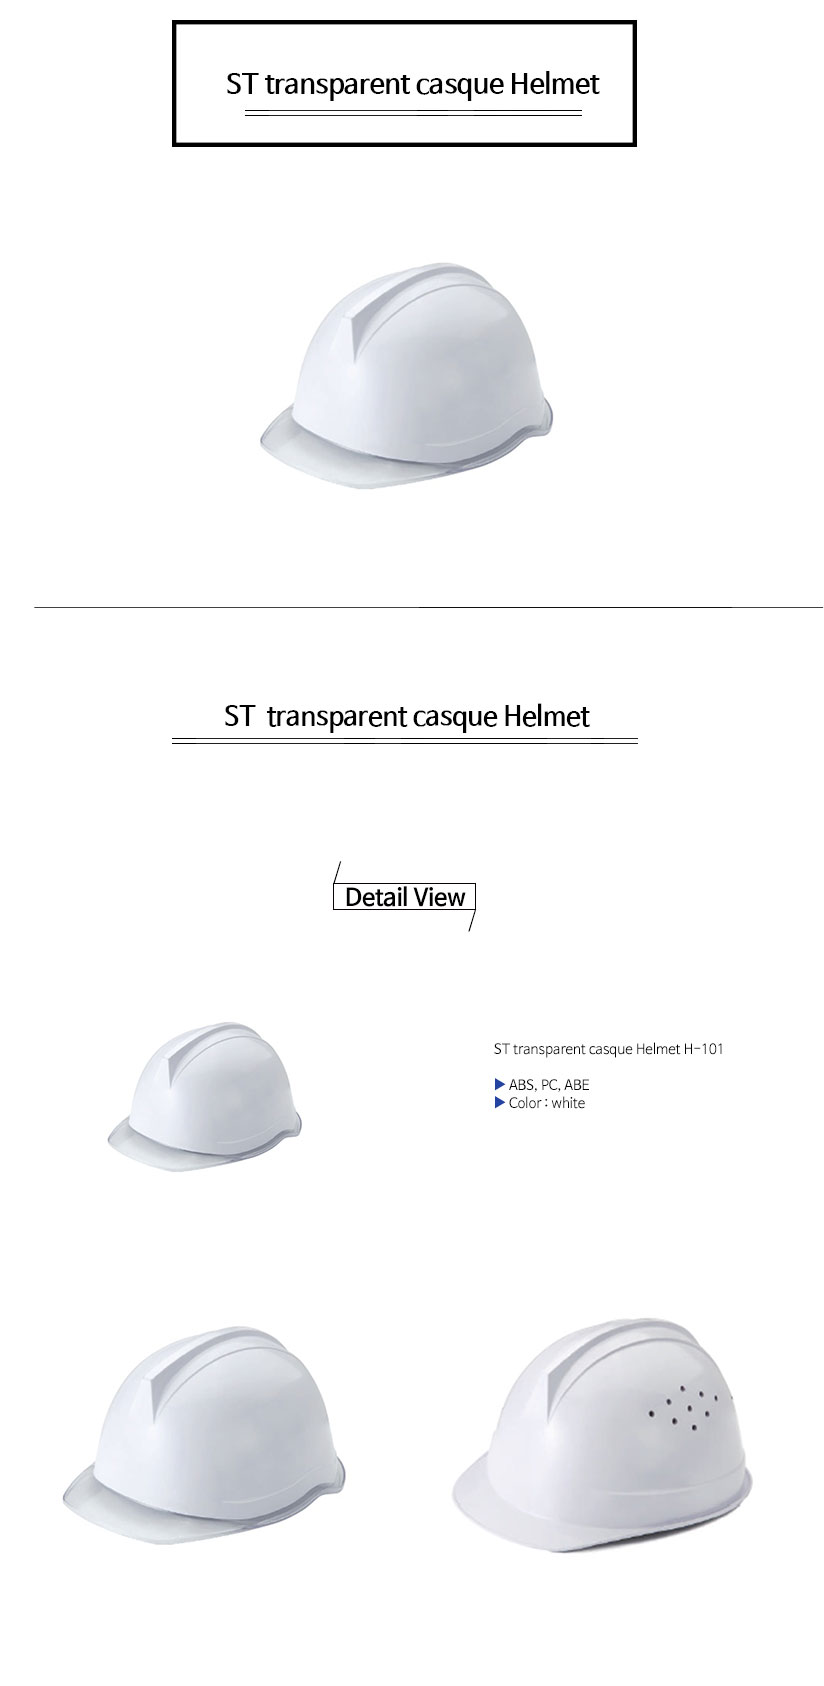 투구투명창안전모ST--transparent-casque-Helmet.jpg